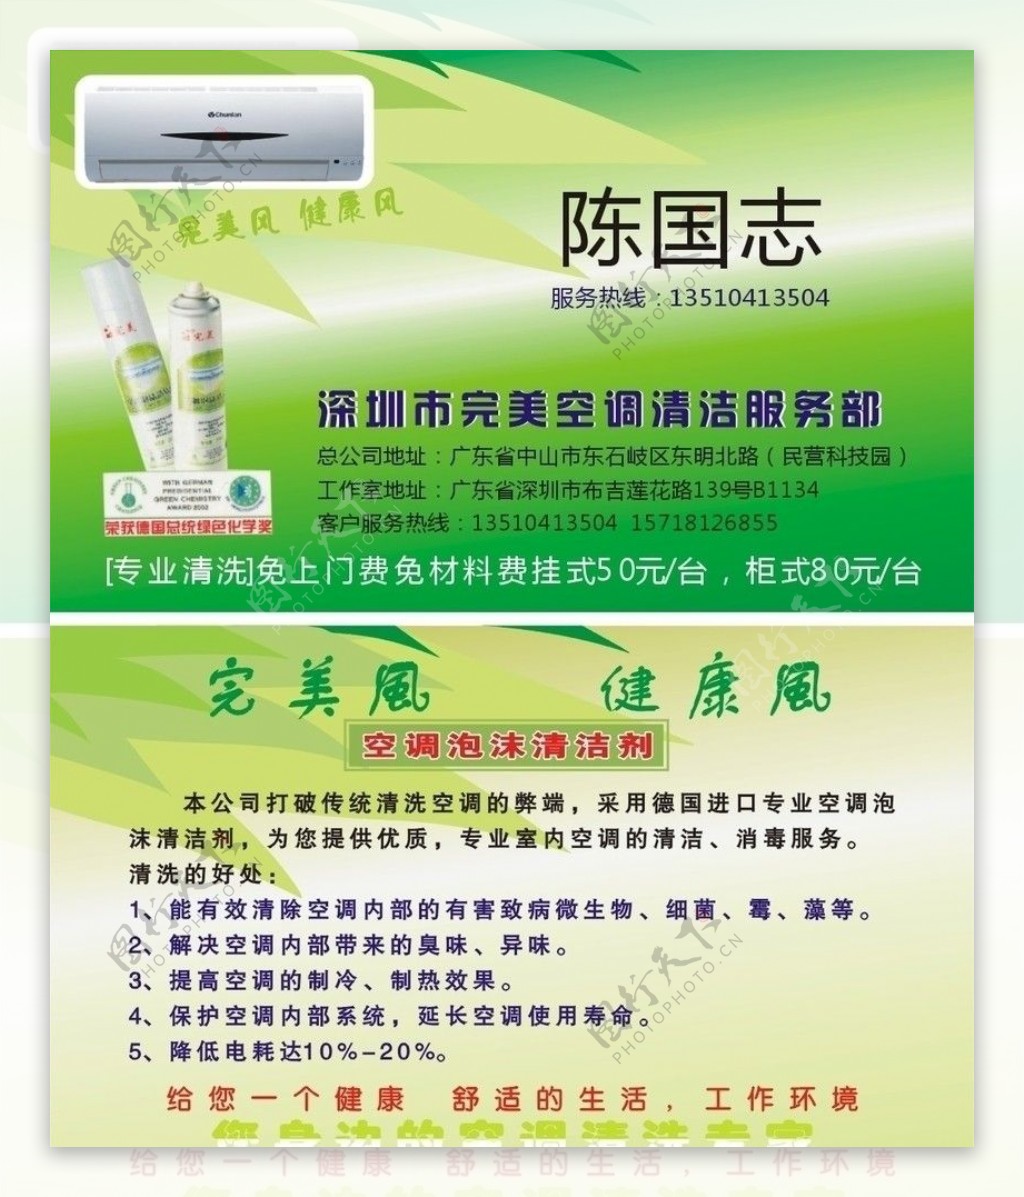 深圳市完美空调清洁服务部的名片图片